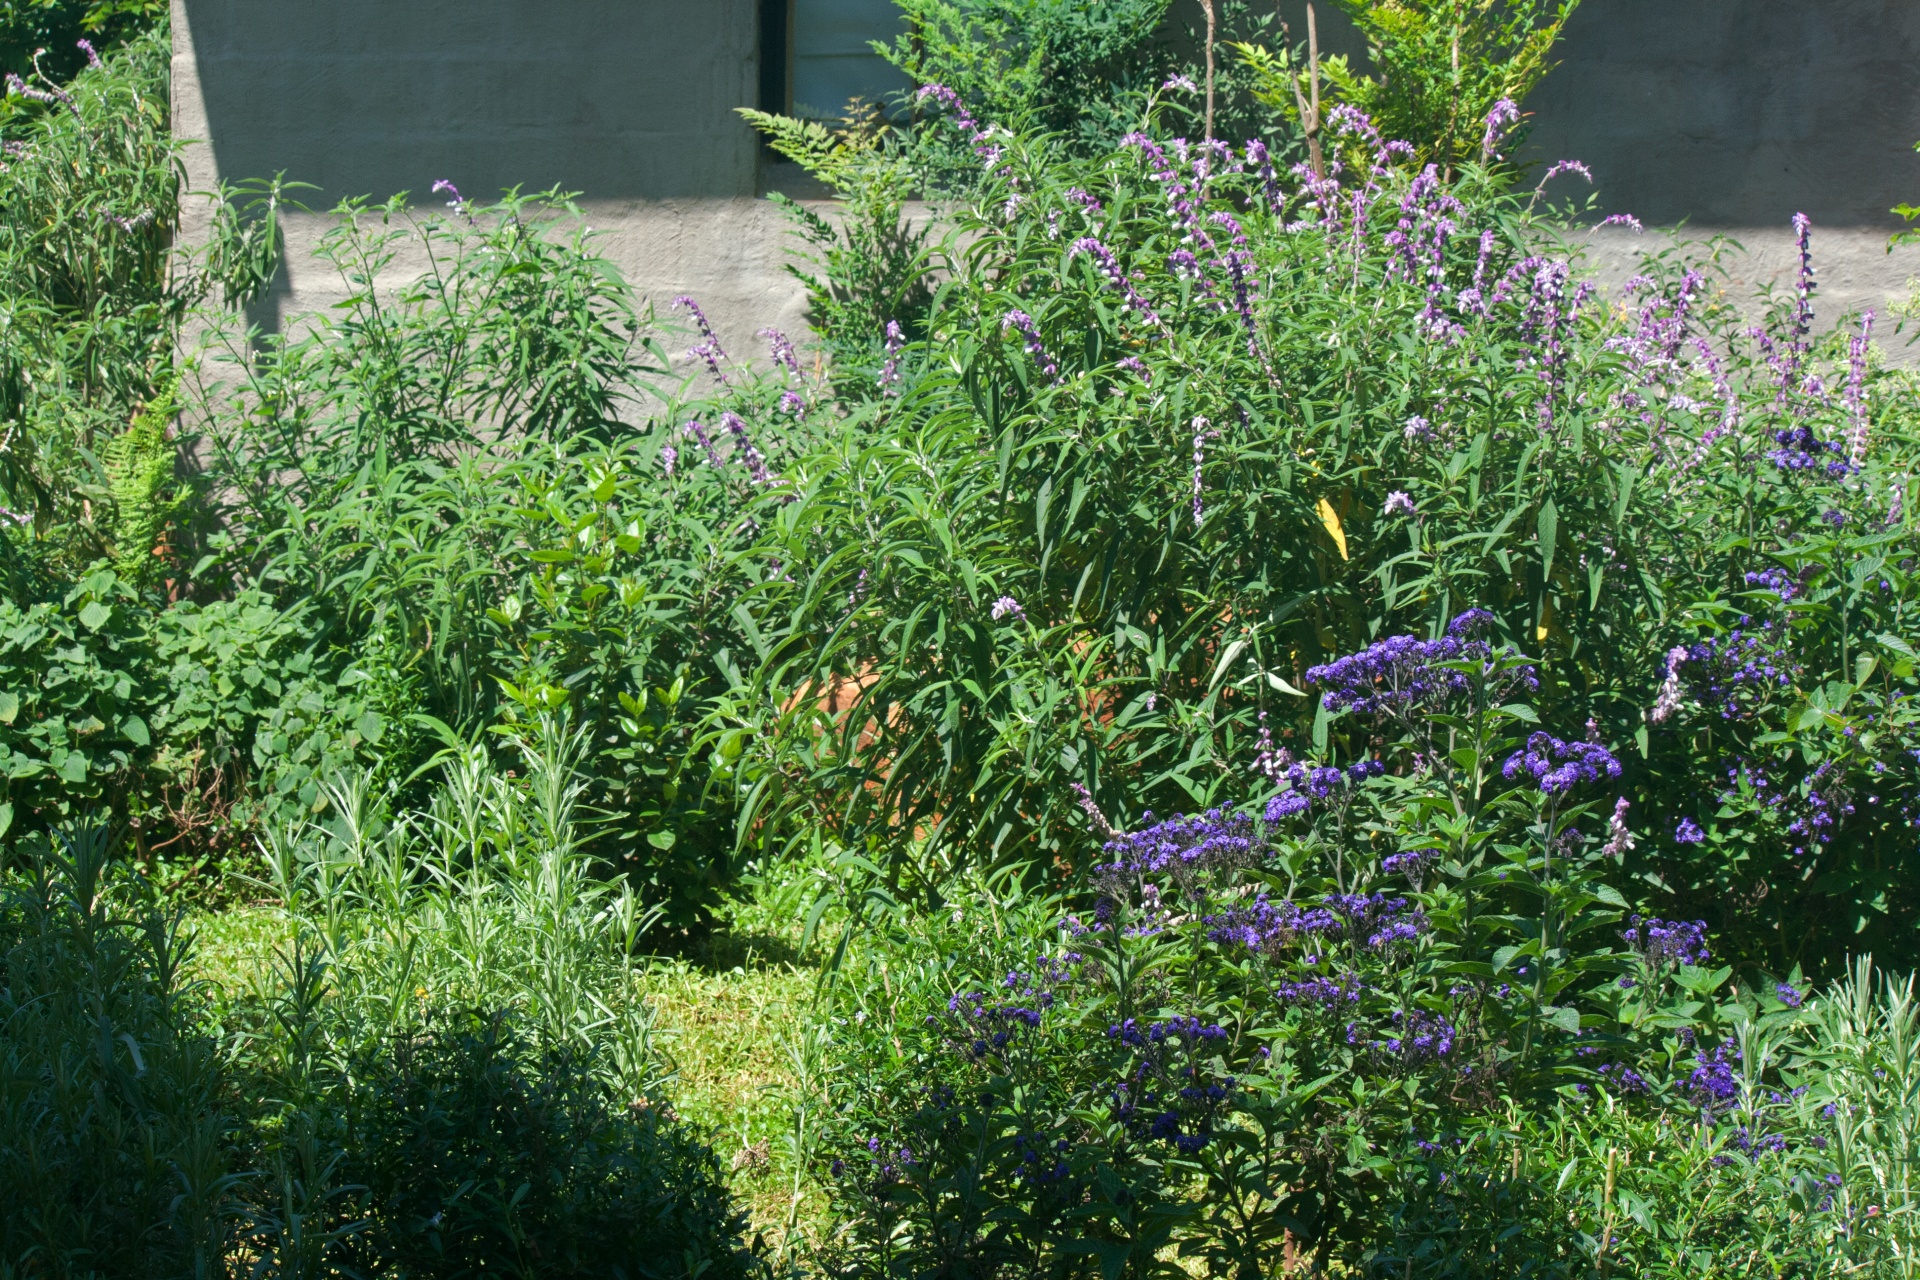 Plectranthus Plant & Purple Flowers